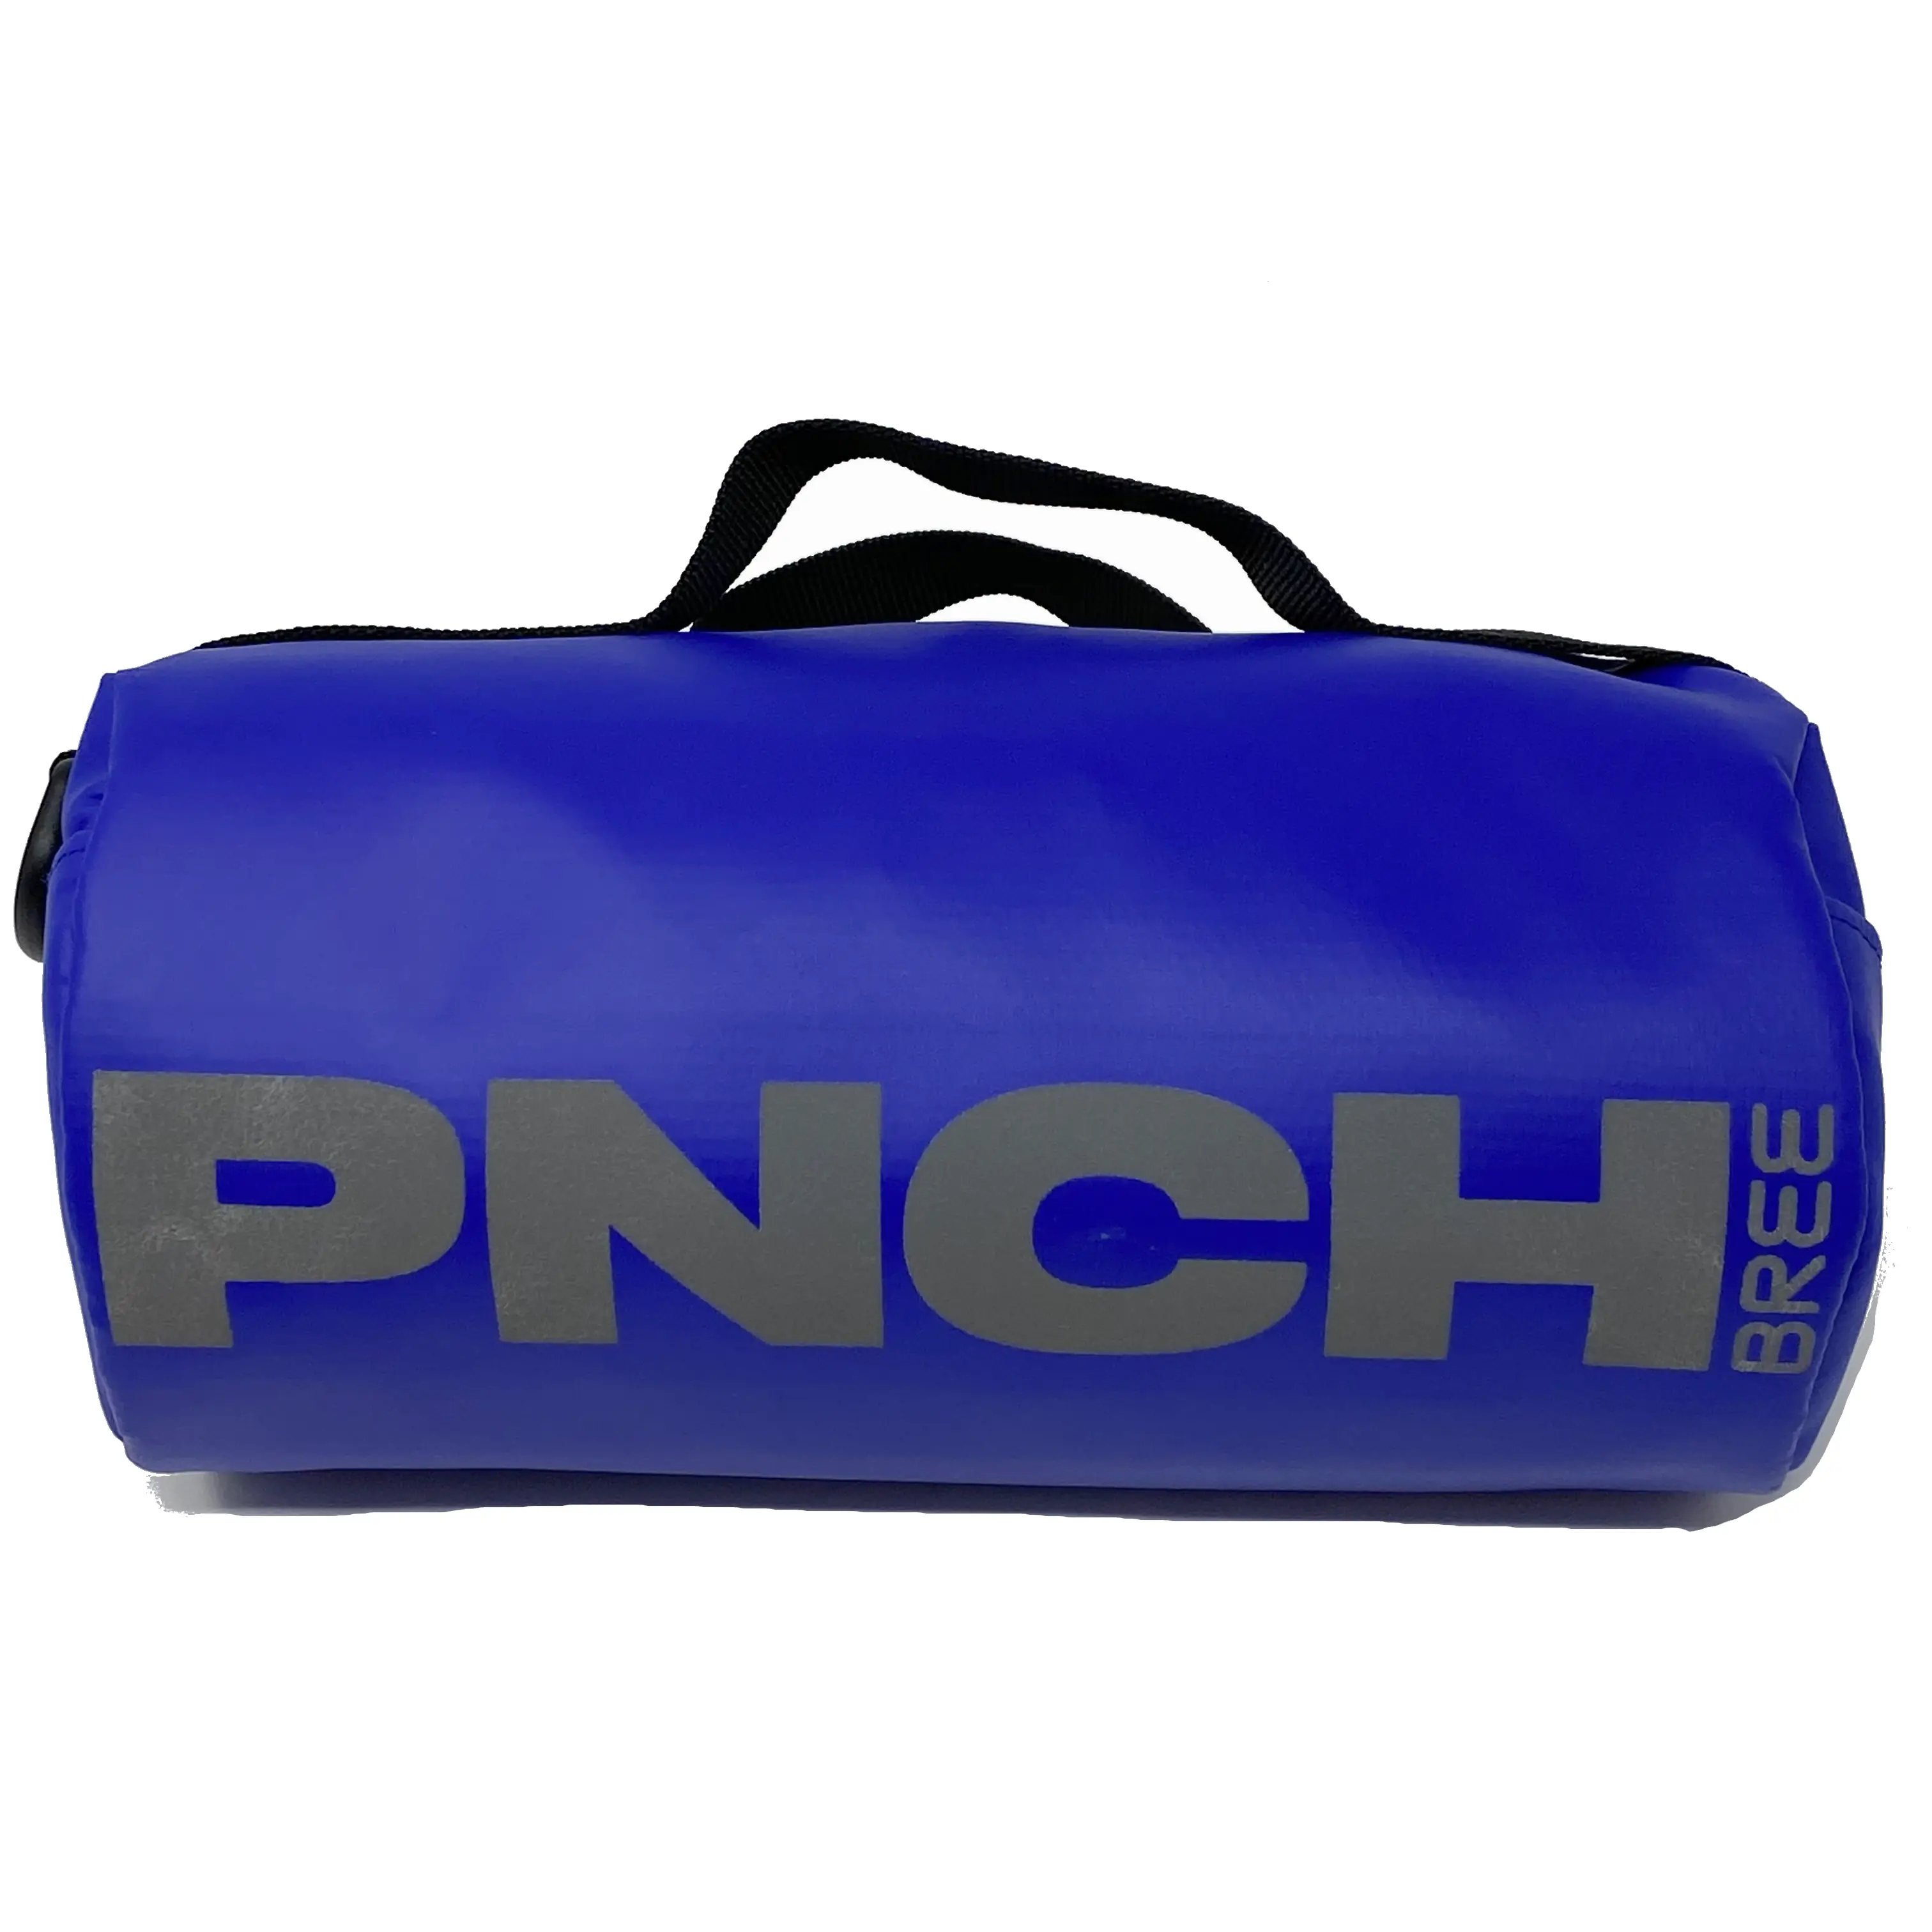 Bree PNCH 800 bike bag- space blue